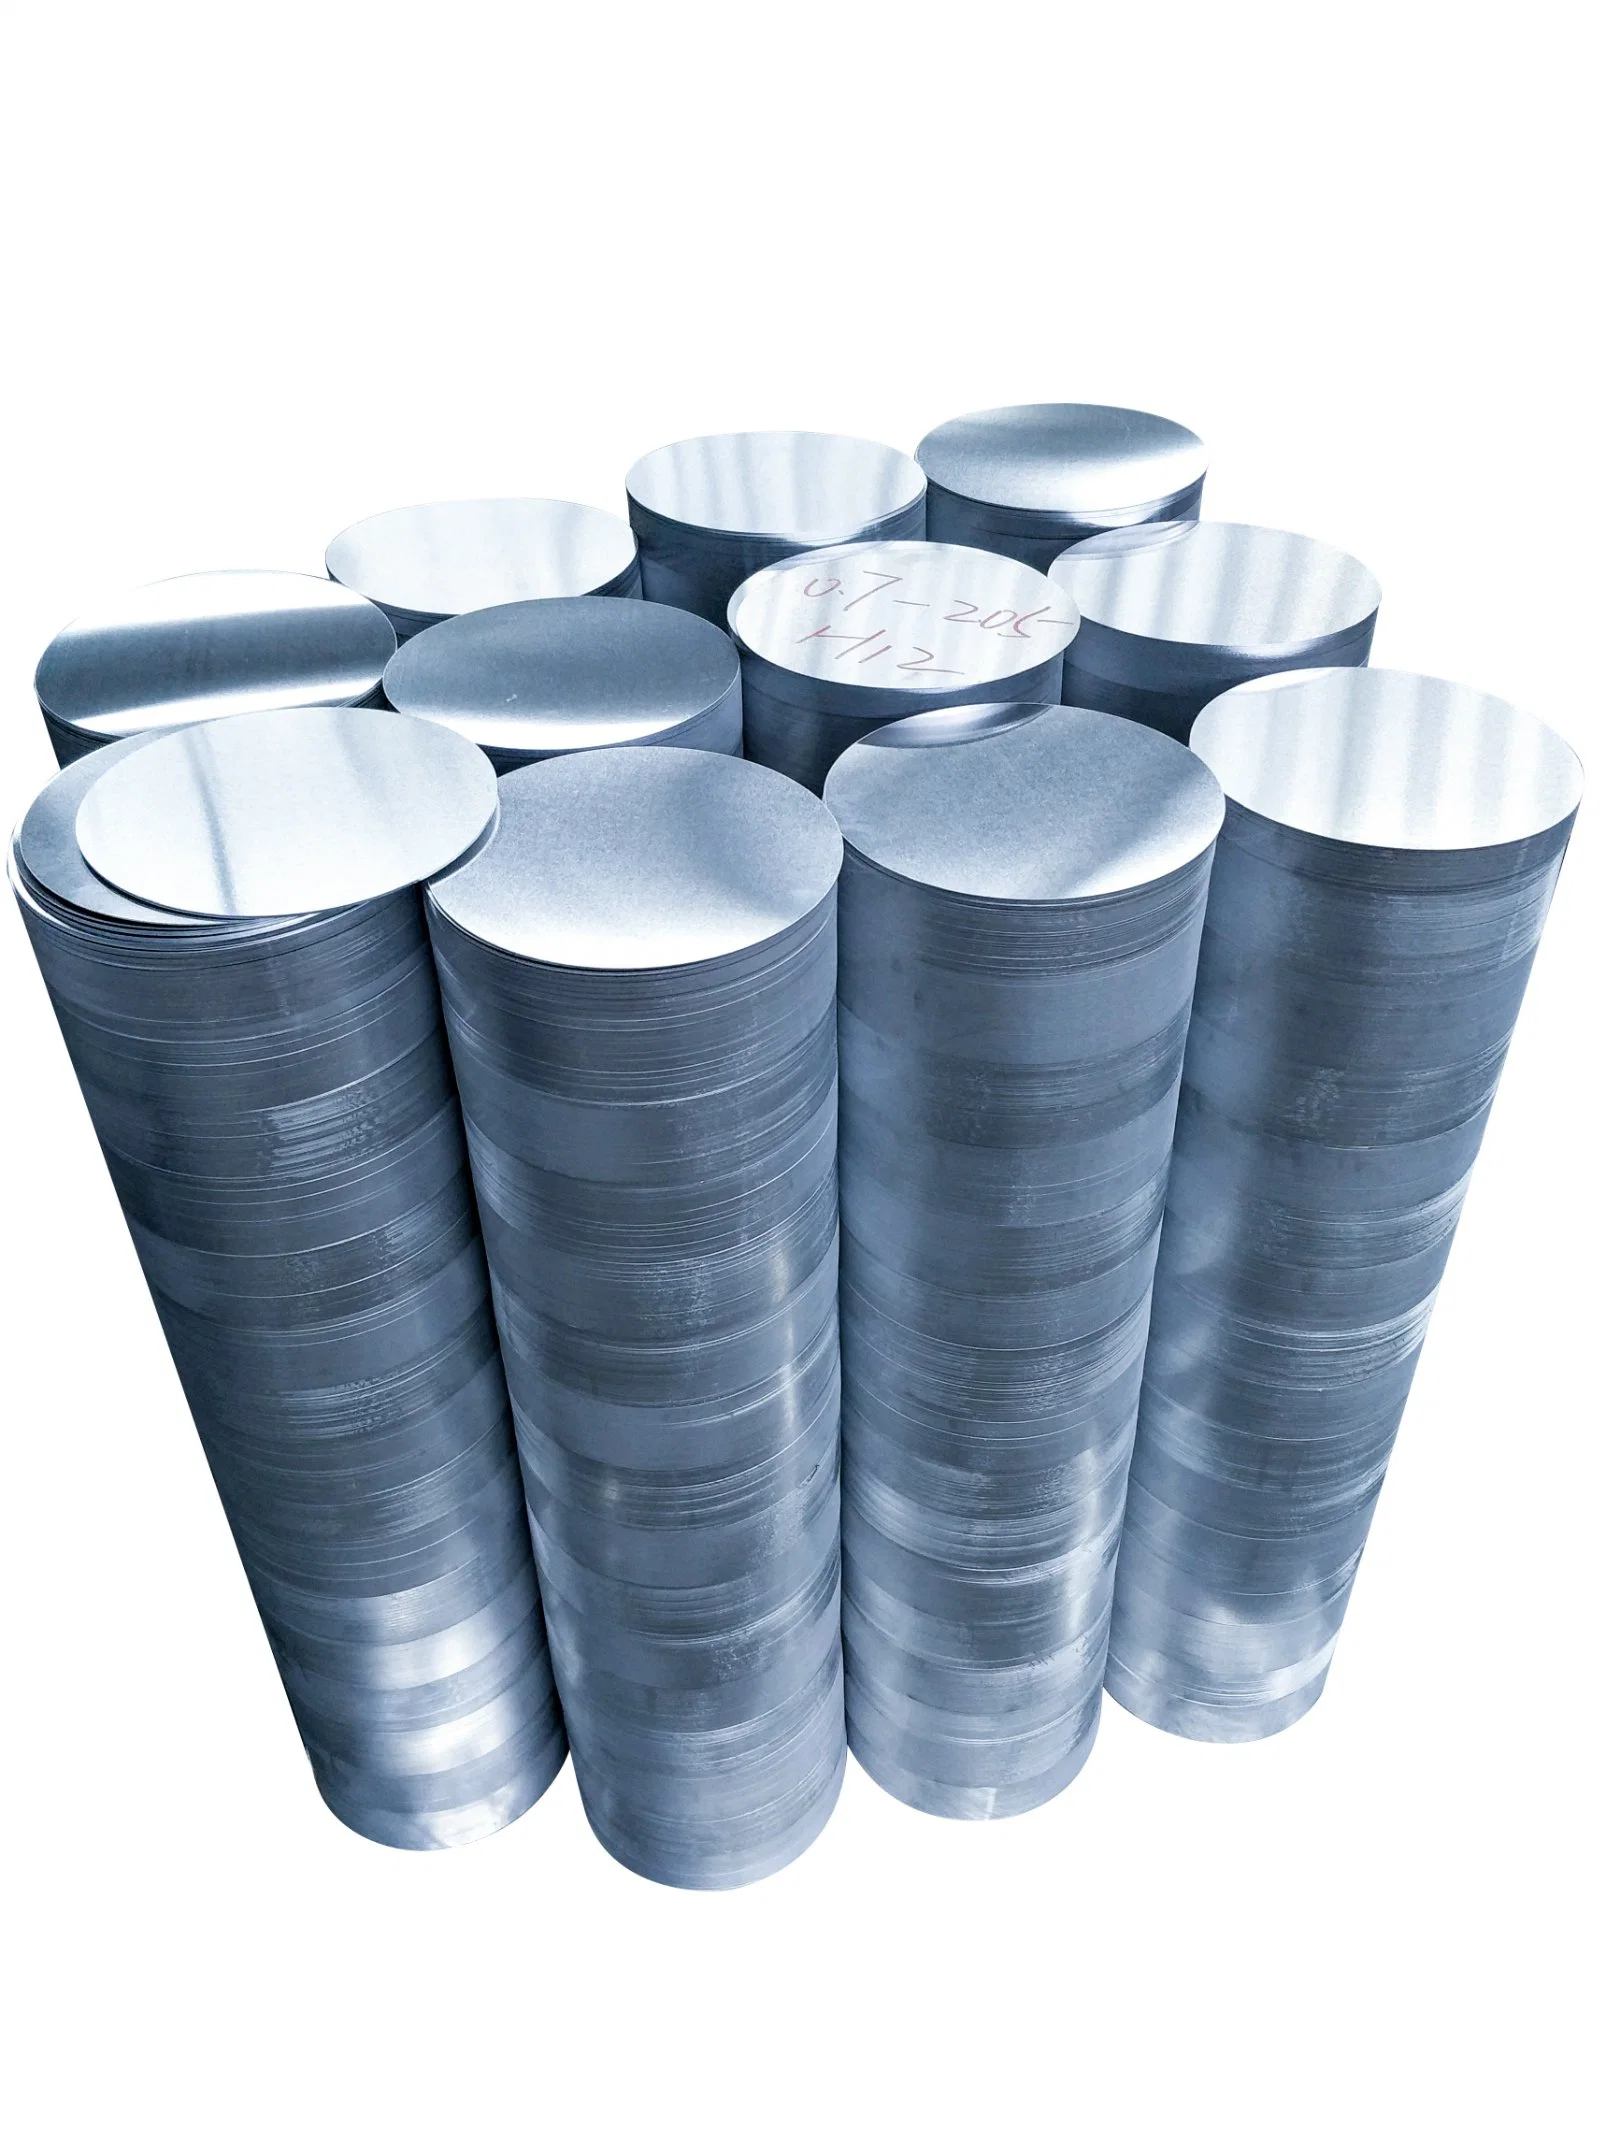 Círculos de alumínio em liga de alumínio de alta qualidade para utensílios